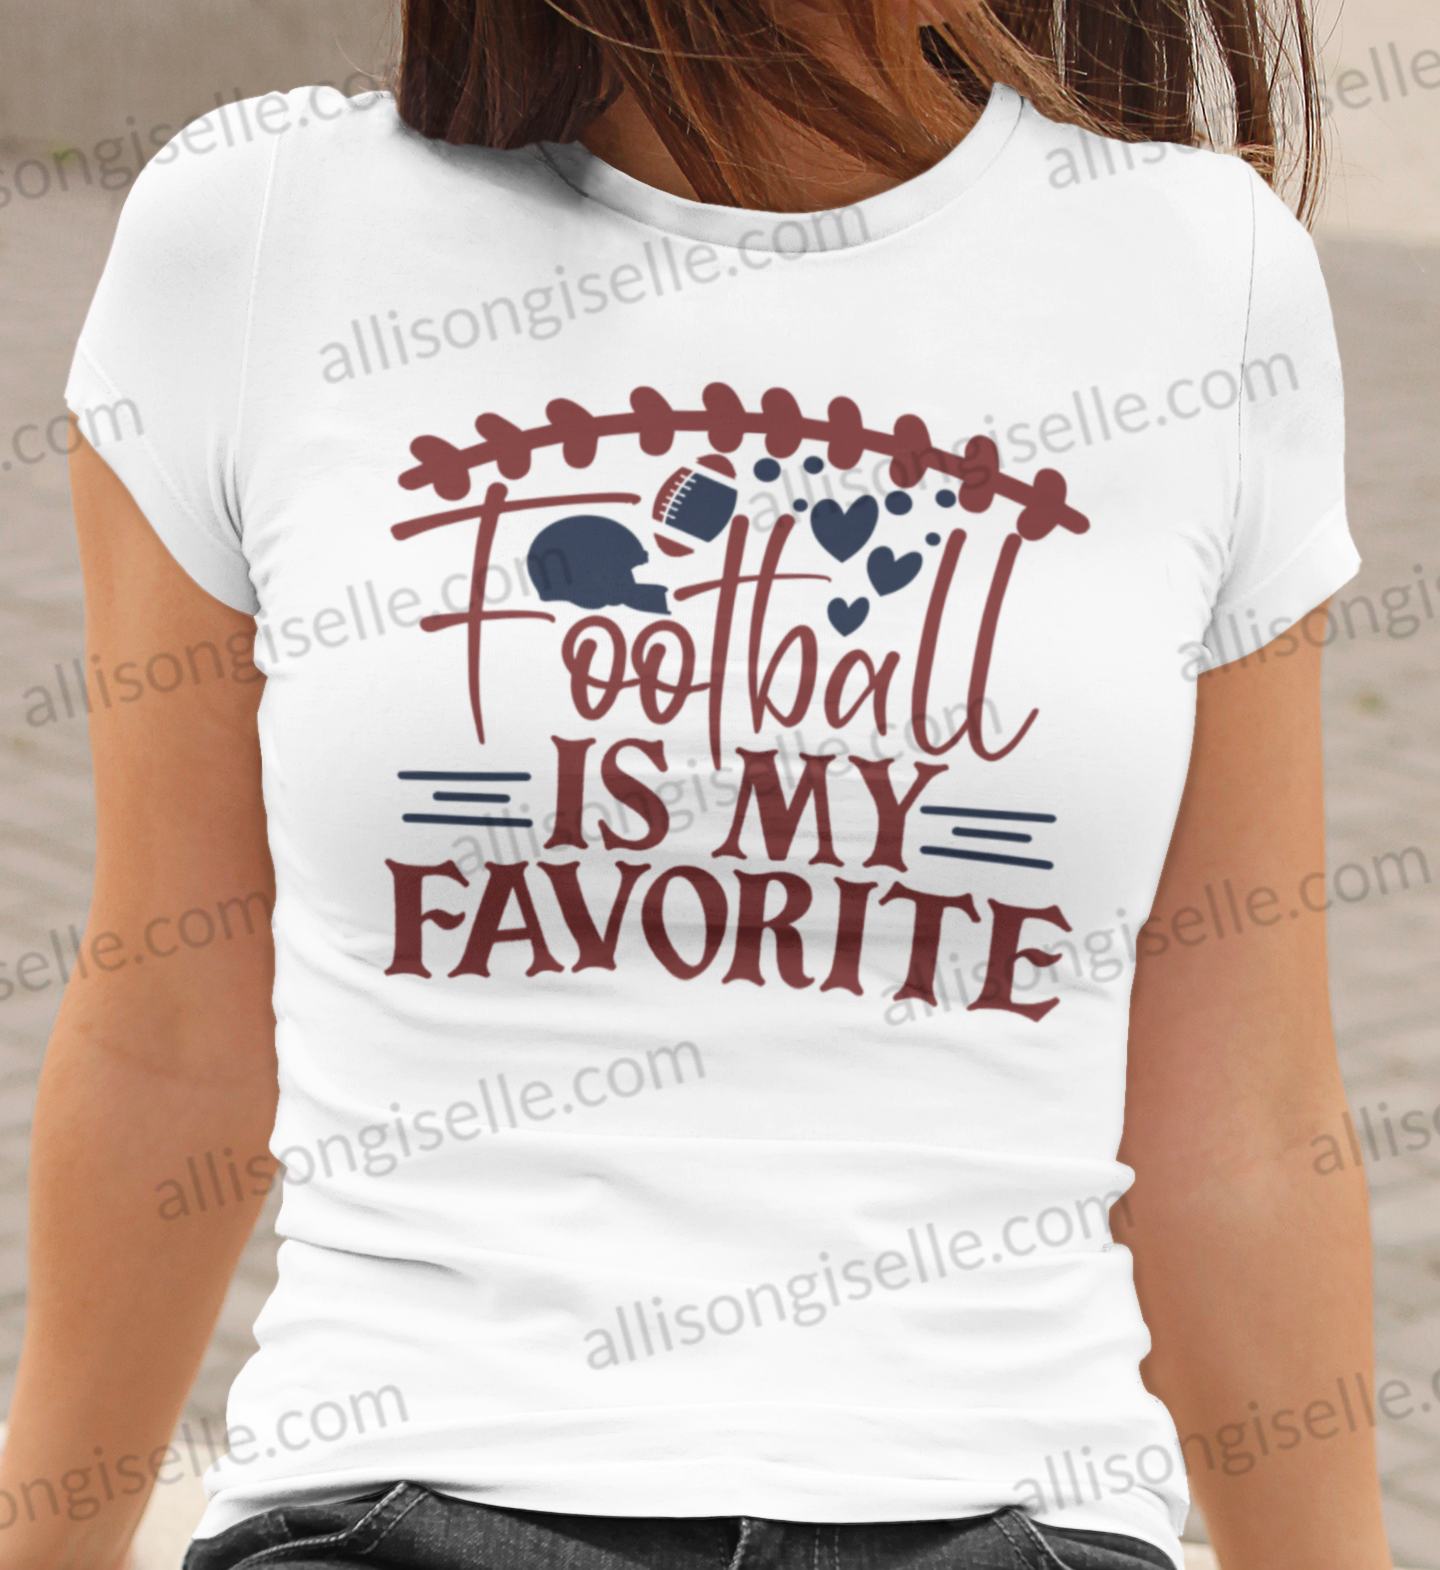 Football Is My Favorite Shirt, Football Shirt, Football Shirt Women, Crew Neck Women Shirt, Football t shirt, Football t shirt Women